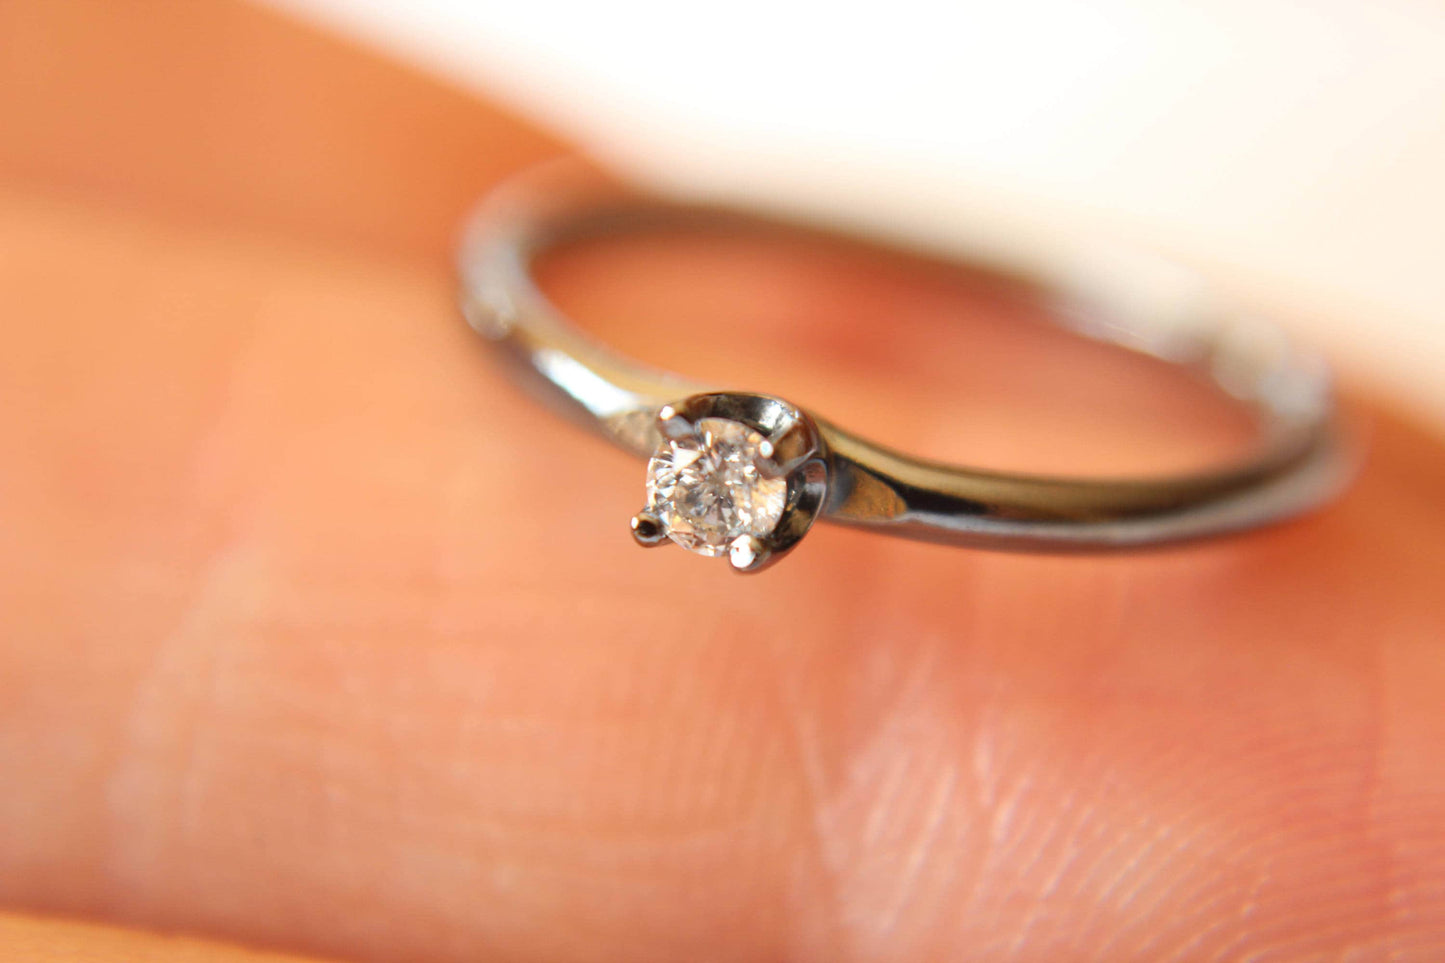 Diamond Ring, Genuine White Diamond Ring, White Diamond, Simple Diamond Ring, Minimal, Gift, April Birthstone Ring, Tiny Diamond Ring